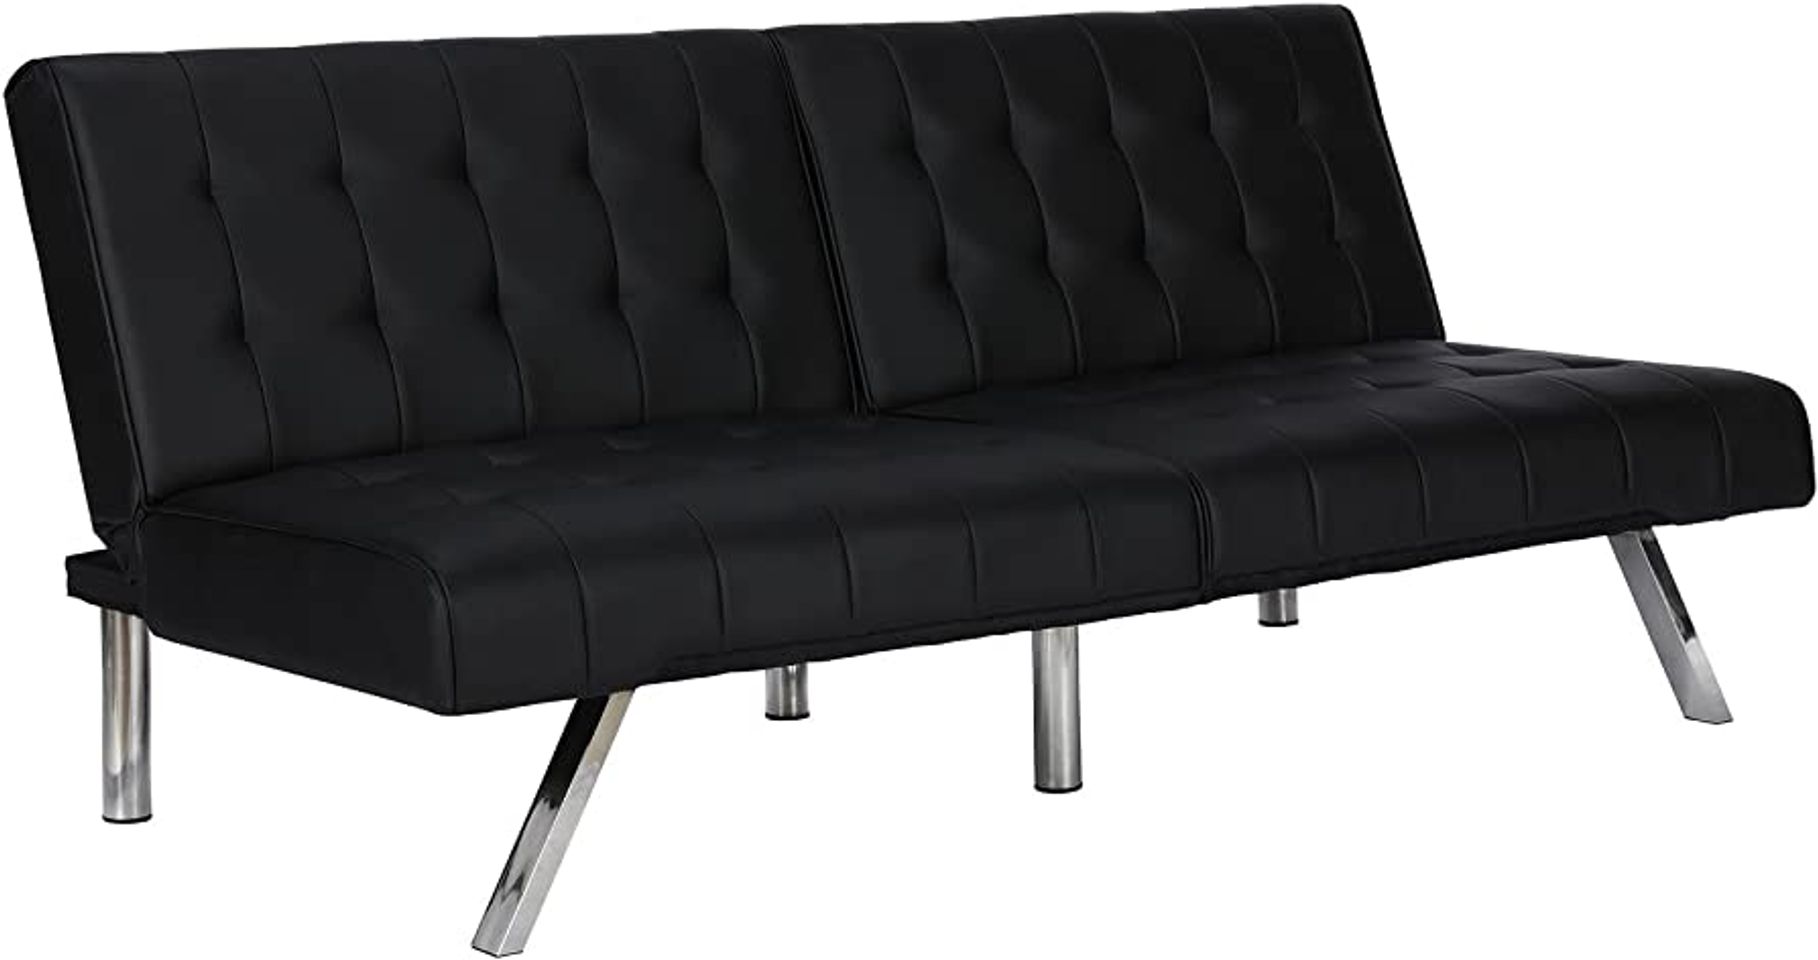 dhp emily futon sofa bed amazon